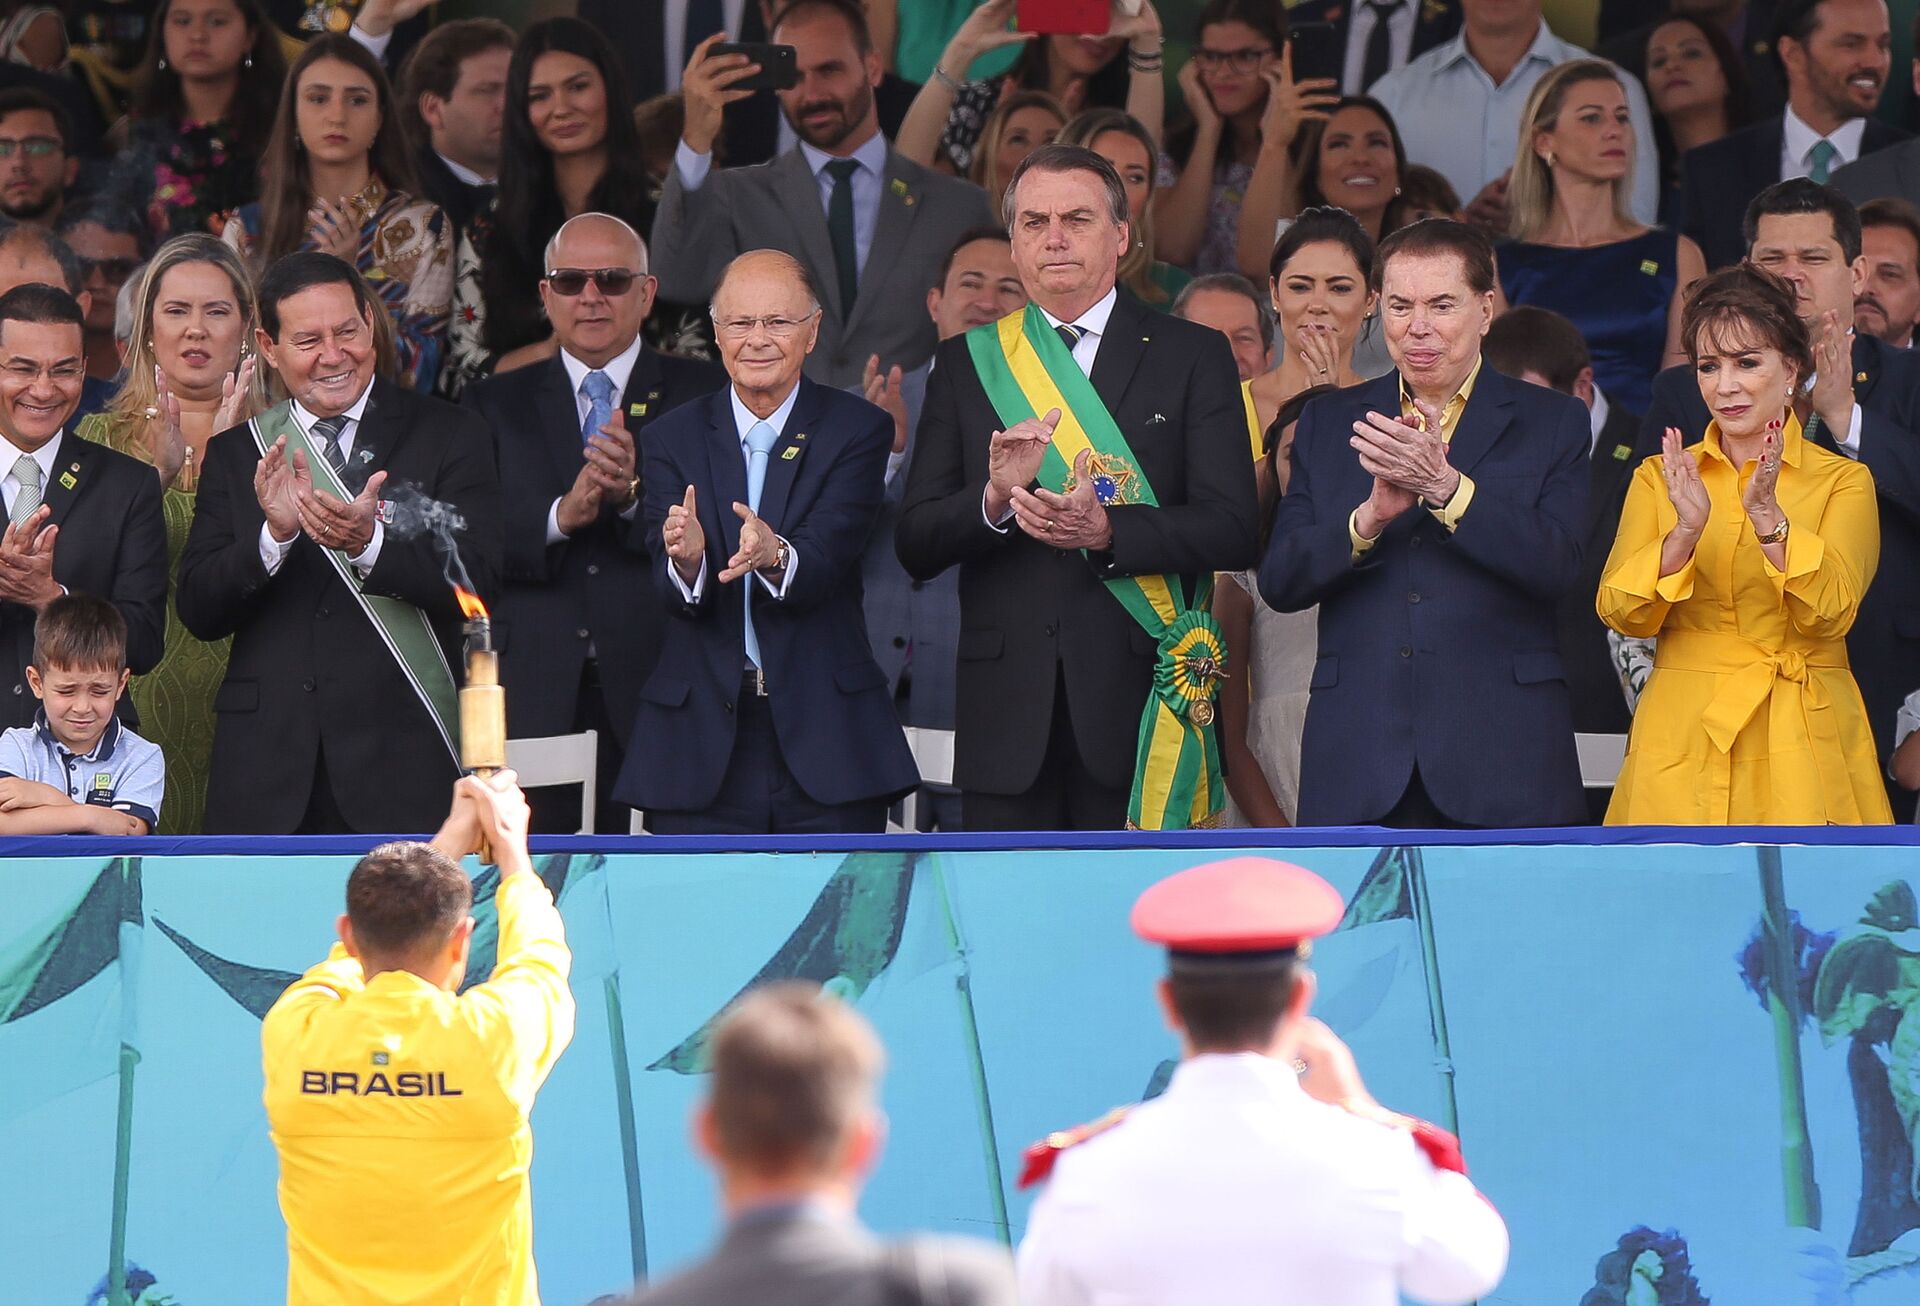 Atos no 7 de setembro: Bolsonaro não politizou as PMs, elas são altamente politizadas, diz analista - Sputnik Brasil, 1920, 24.08.2021